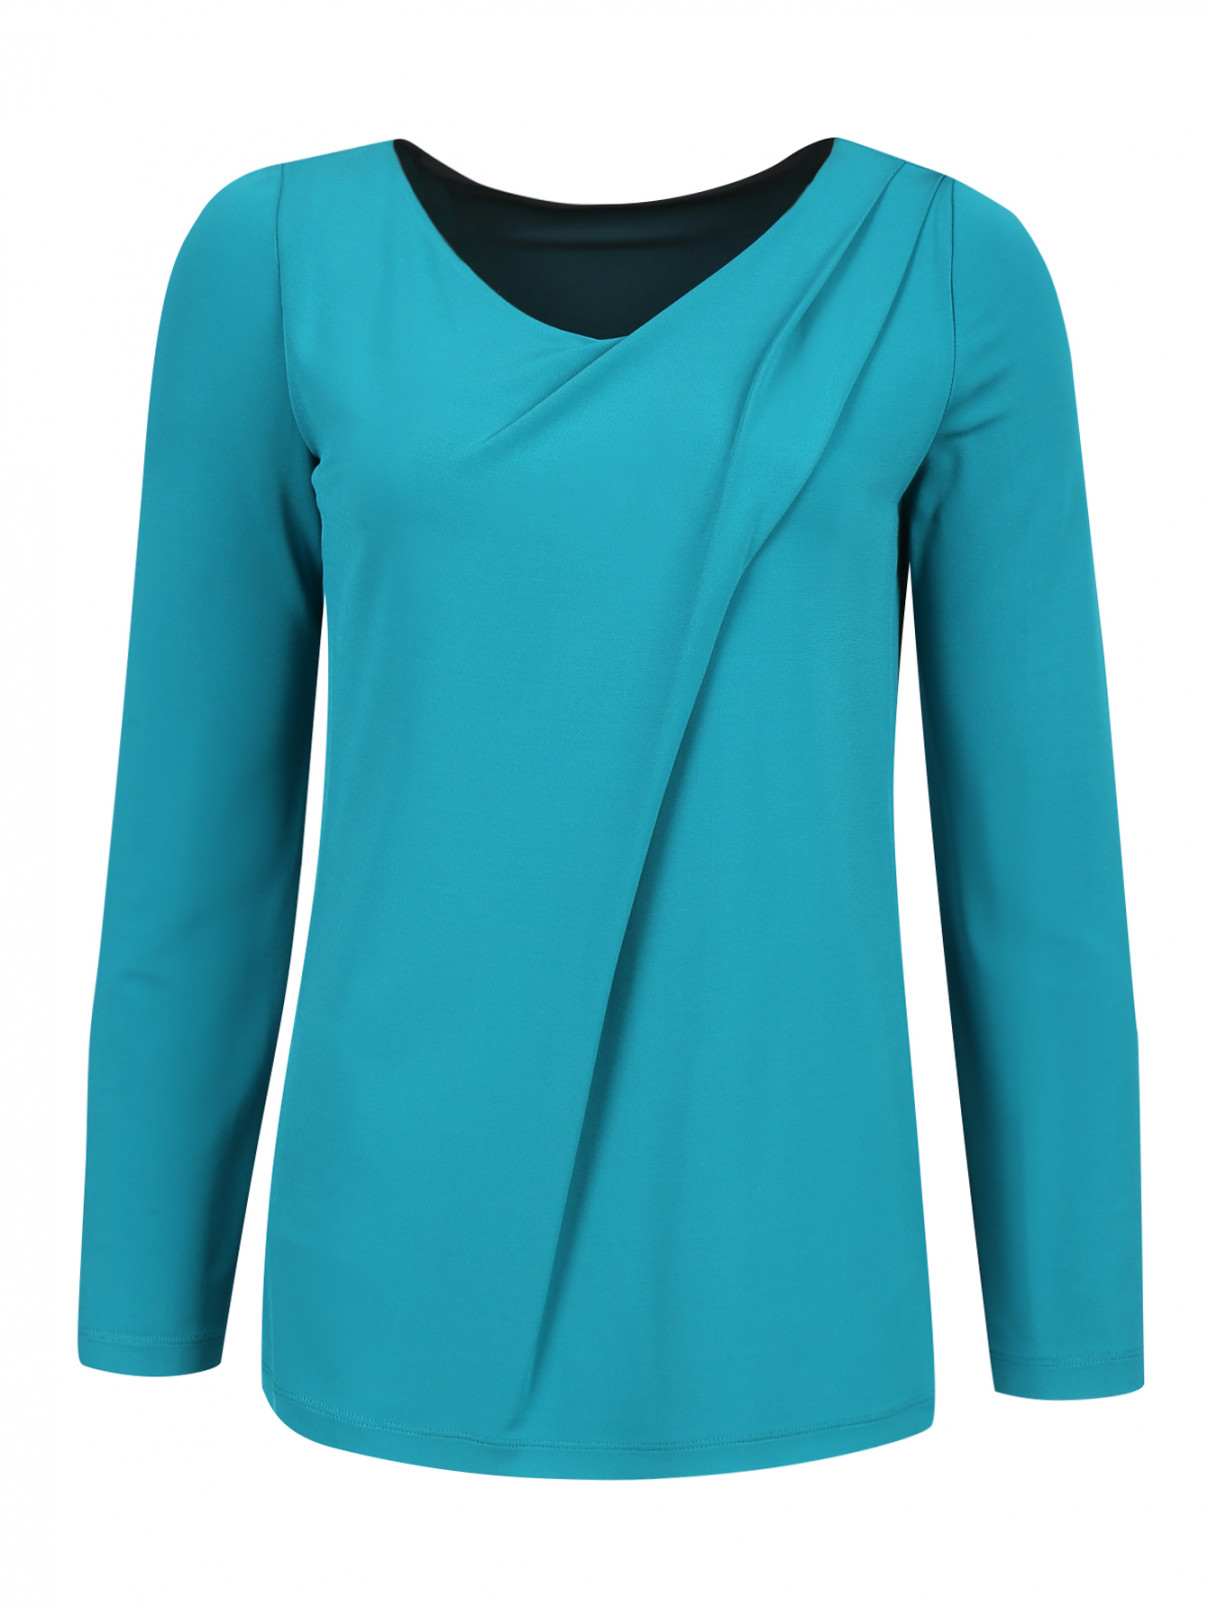 Трикотажная блуза с драпировкой Alberta Ferretti  –  Общий вид  – Цвет:  Зеленый